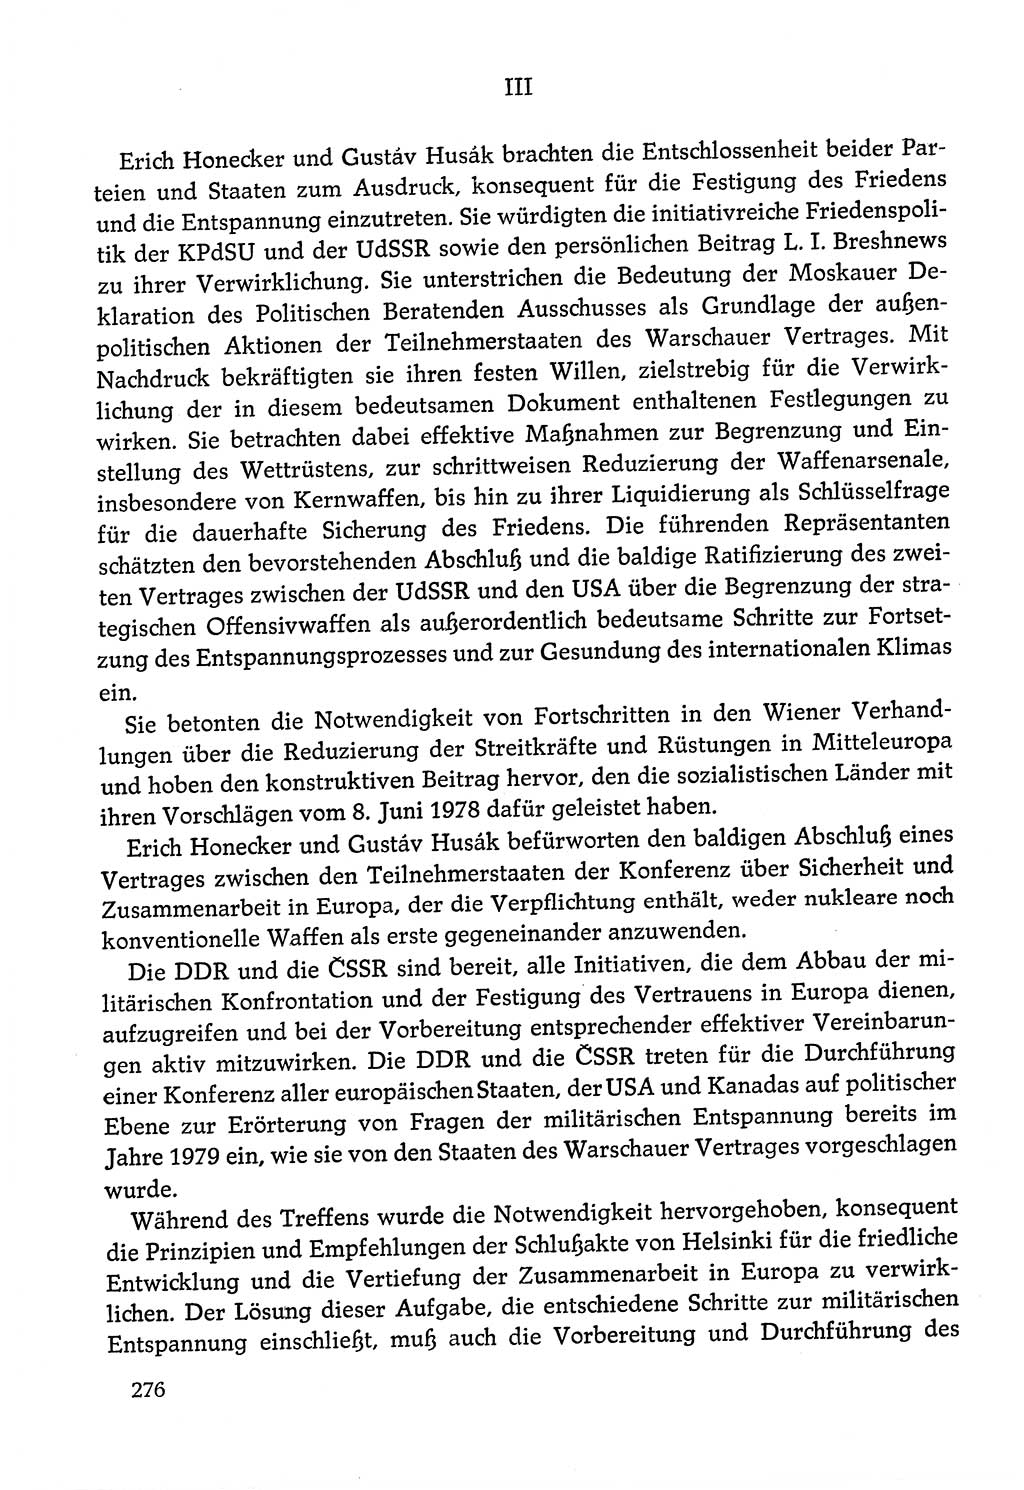 Dokumente der Sozialistischen Einheitspartei Deutschlands (SED) [Deutsche Demokratische Republik (DDR)] 1978-1979, Seite 276 (Dok. SED DDR 1978-1979, S. 276)